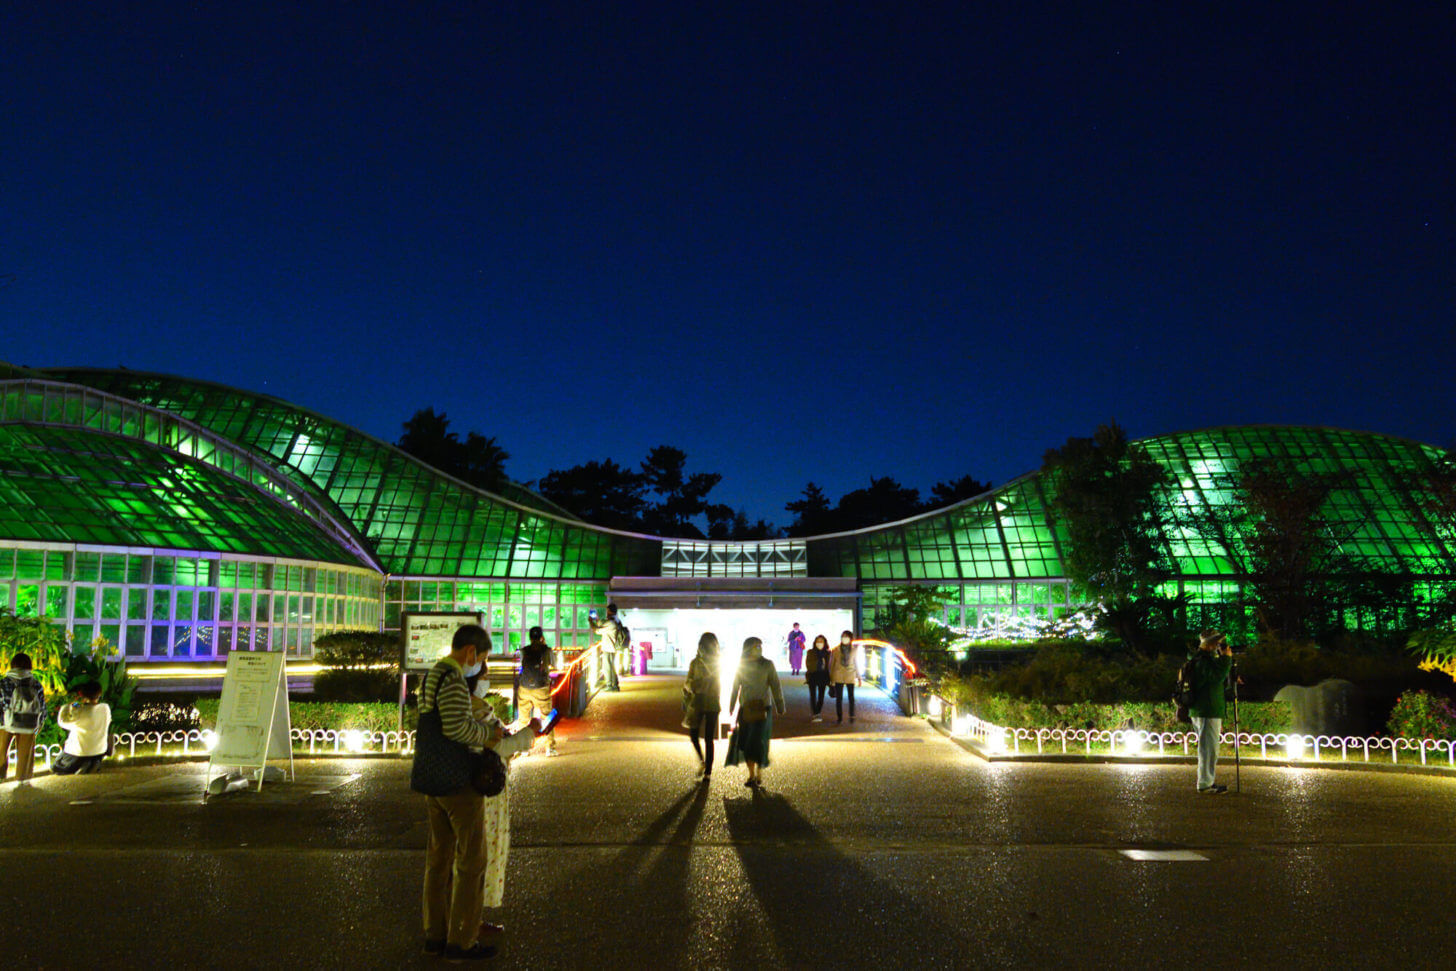 京都府立植物園「世界の紅葉ライトアップ」での観覧温室